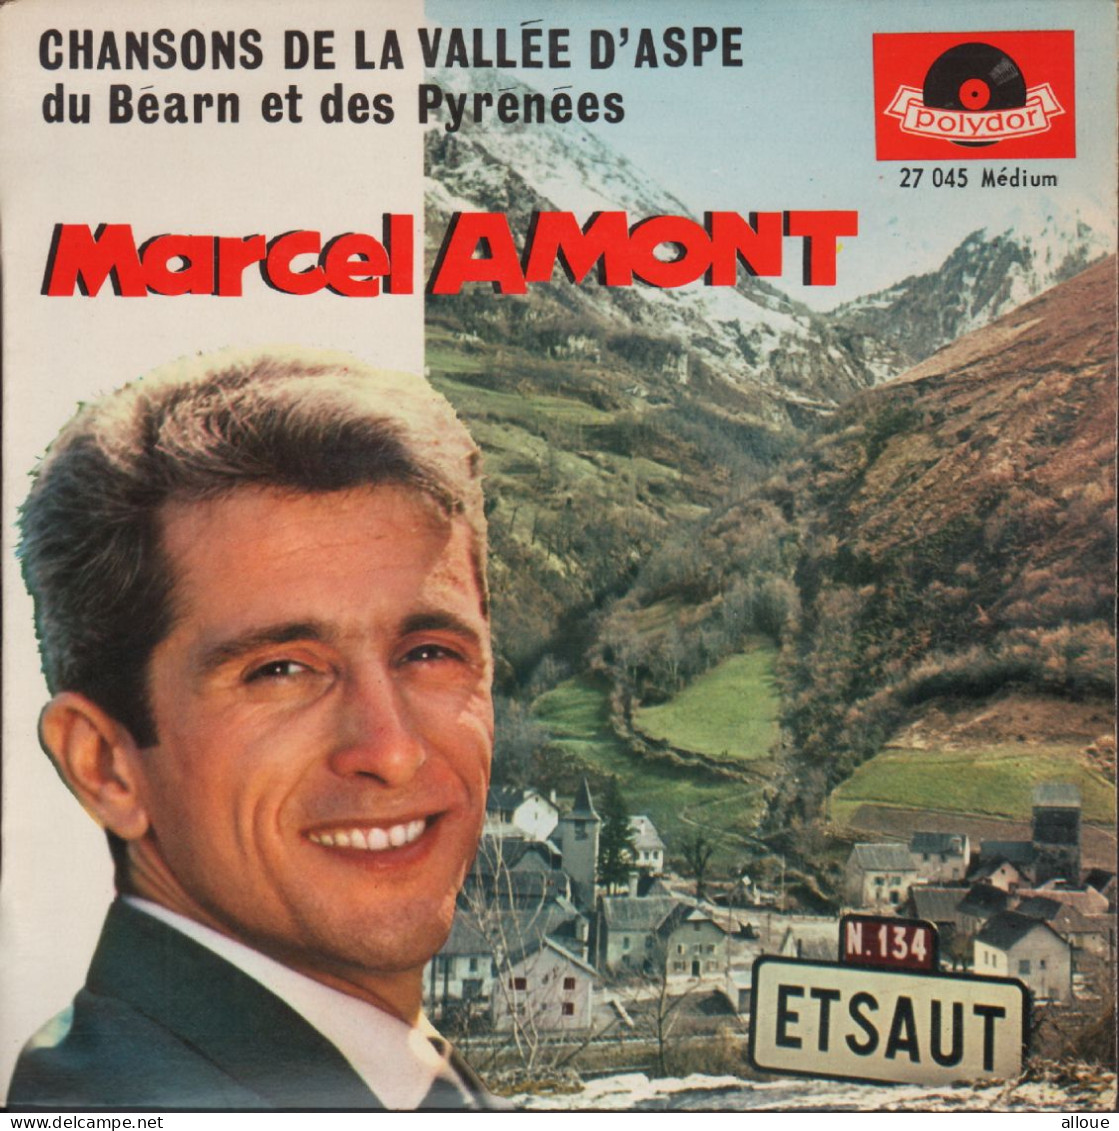 MARCEL AMONT - FR EP CHANSONS DE LA VALLEE D'ASPE : AQUEROS MOUNTAGNOS + 3 - Other - French Music